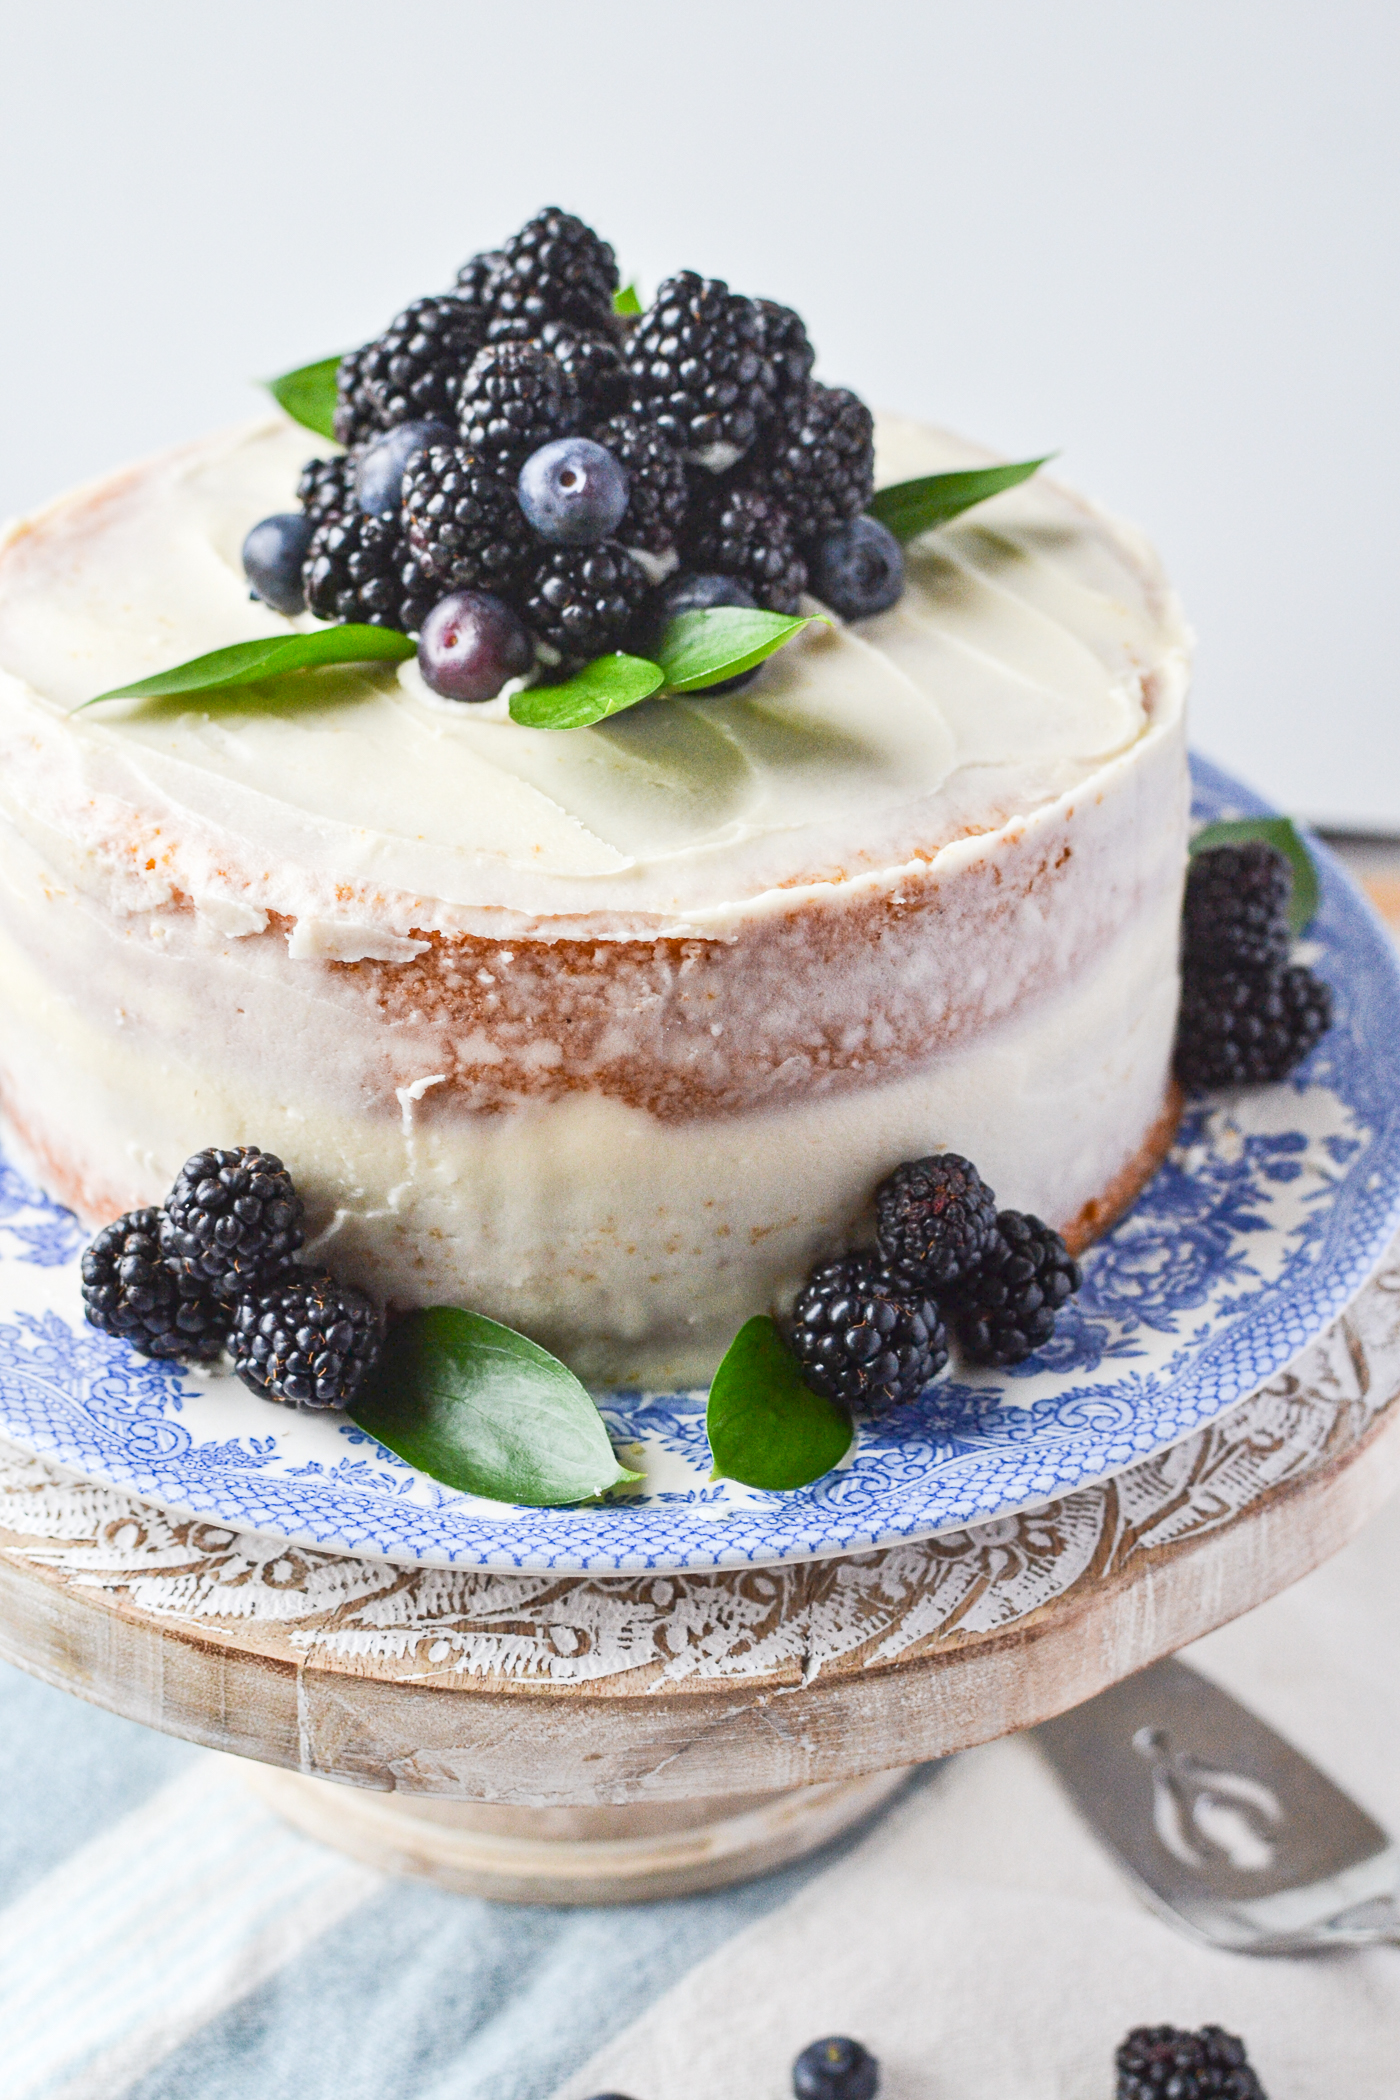 Vegan Lemon Blueberry Cake (With Lemon Glaze) - Any Reason Vegans